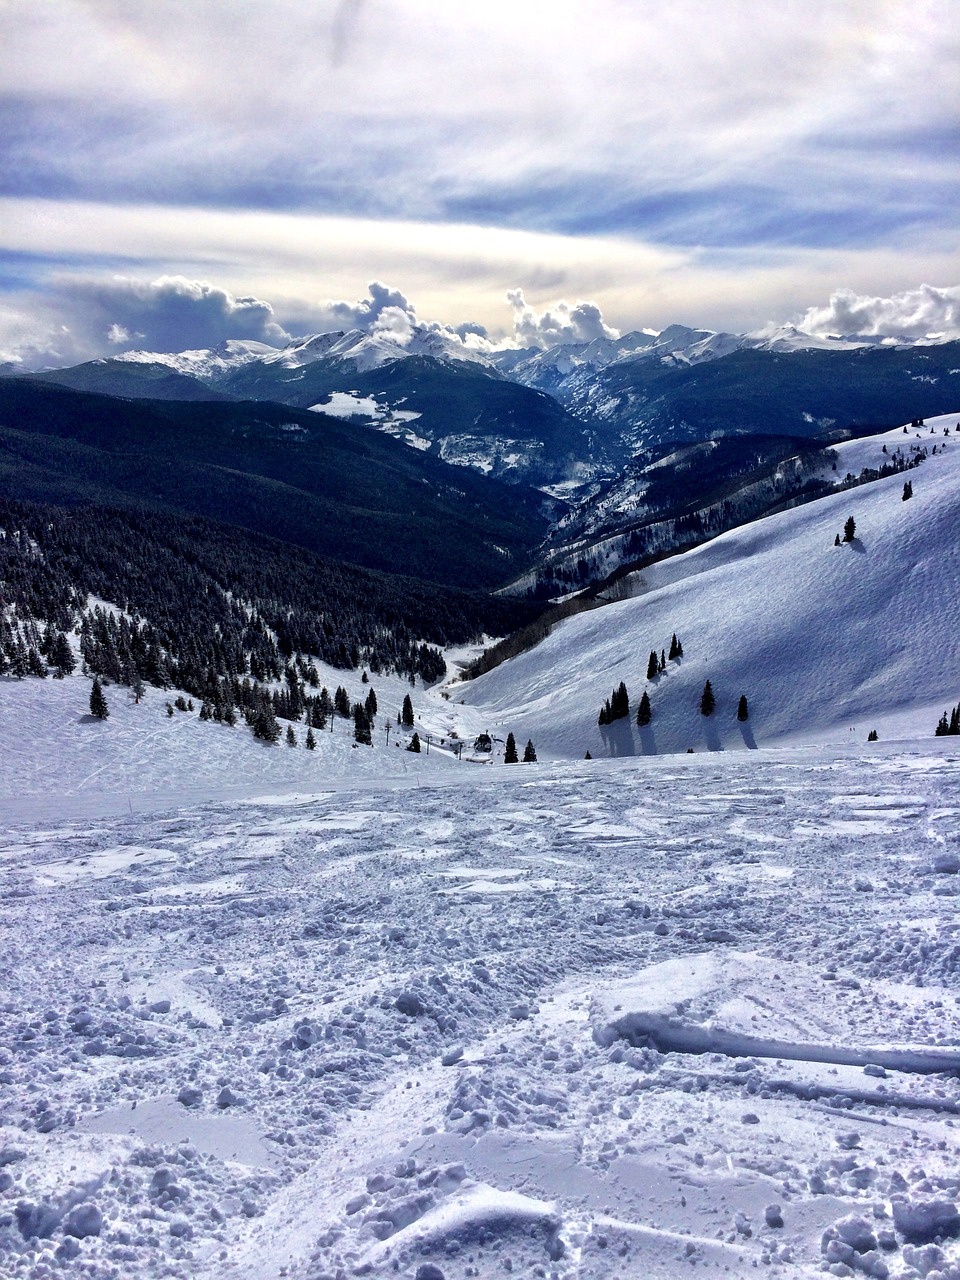 Vail, Colorado, skiing